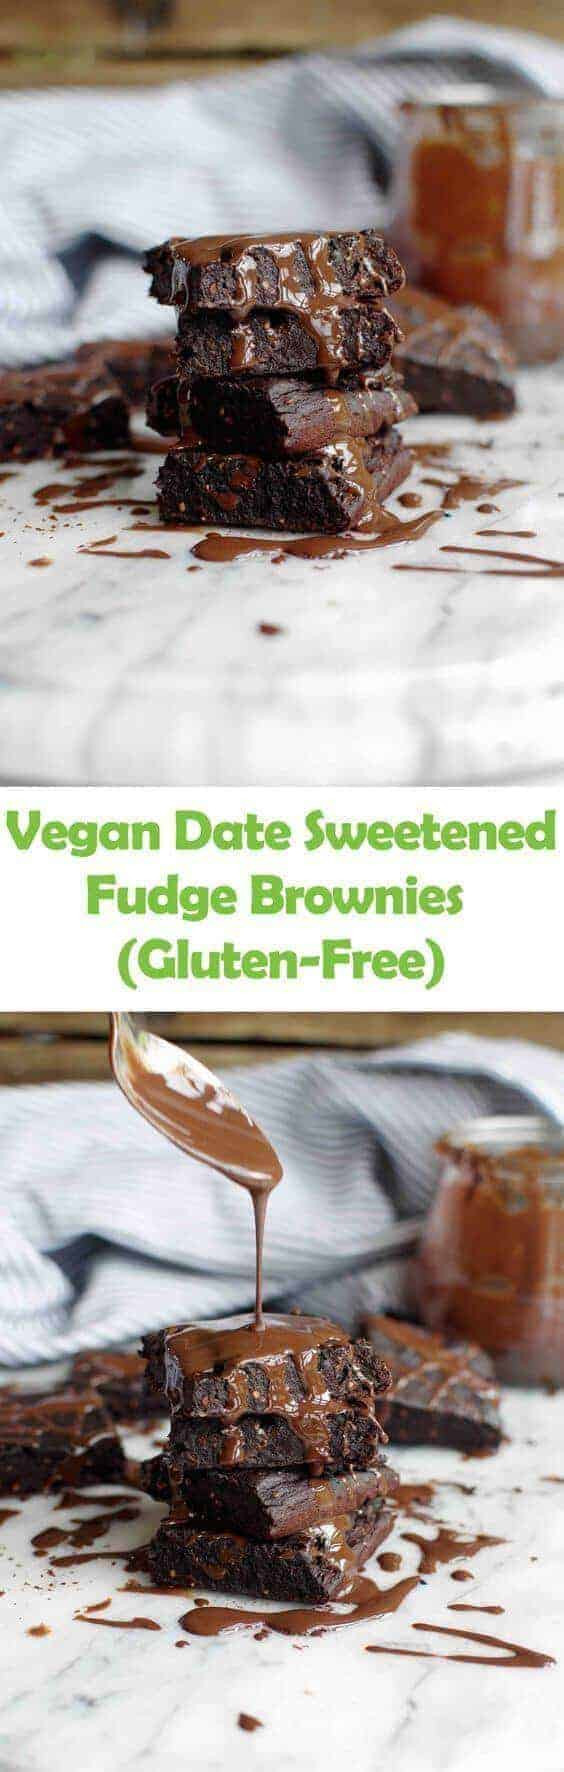 Vegan Date Brownies
 Vegan Date Sweetened Fudge Brownies